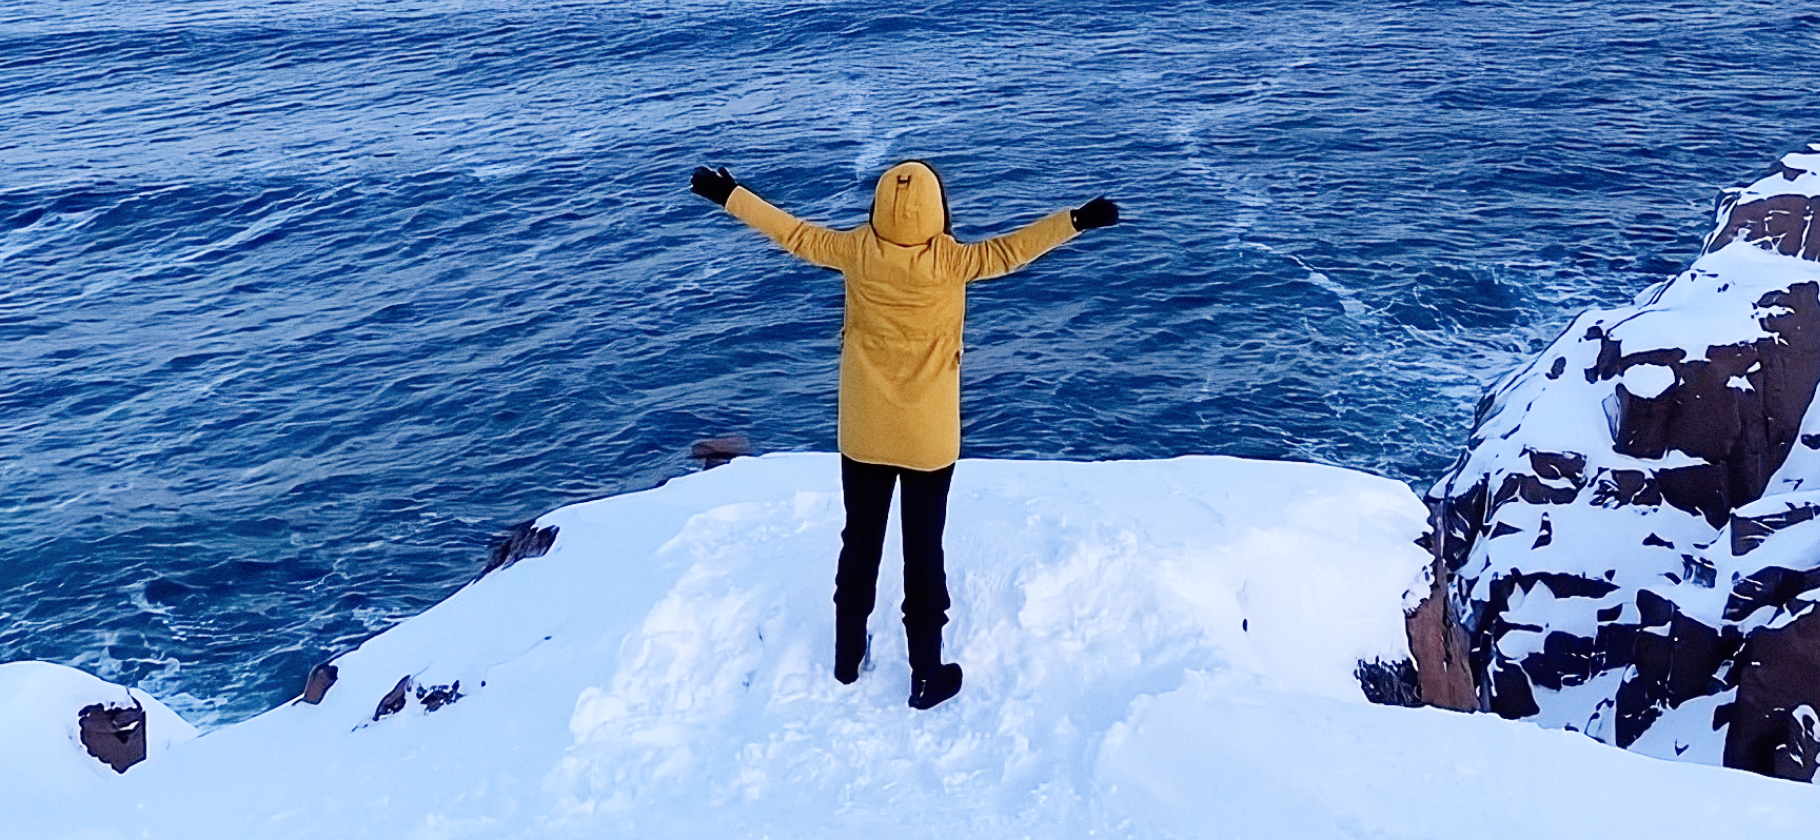 «Три метра снега, красота невероятная»: 10 идей зимних путешествий от читателей